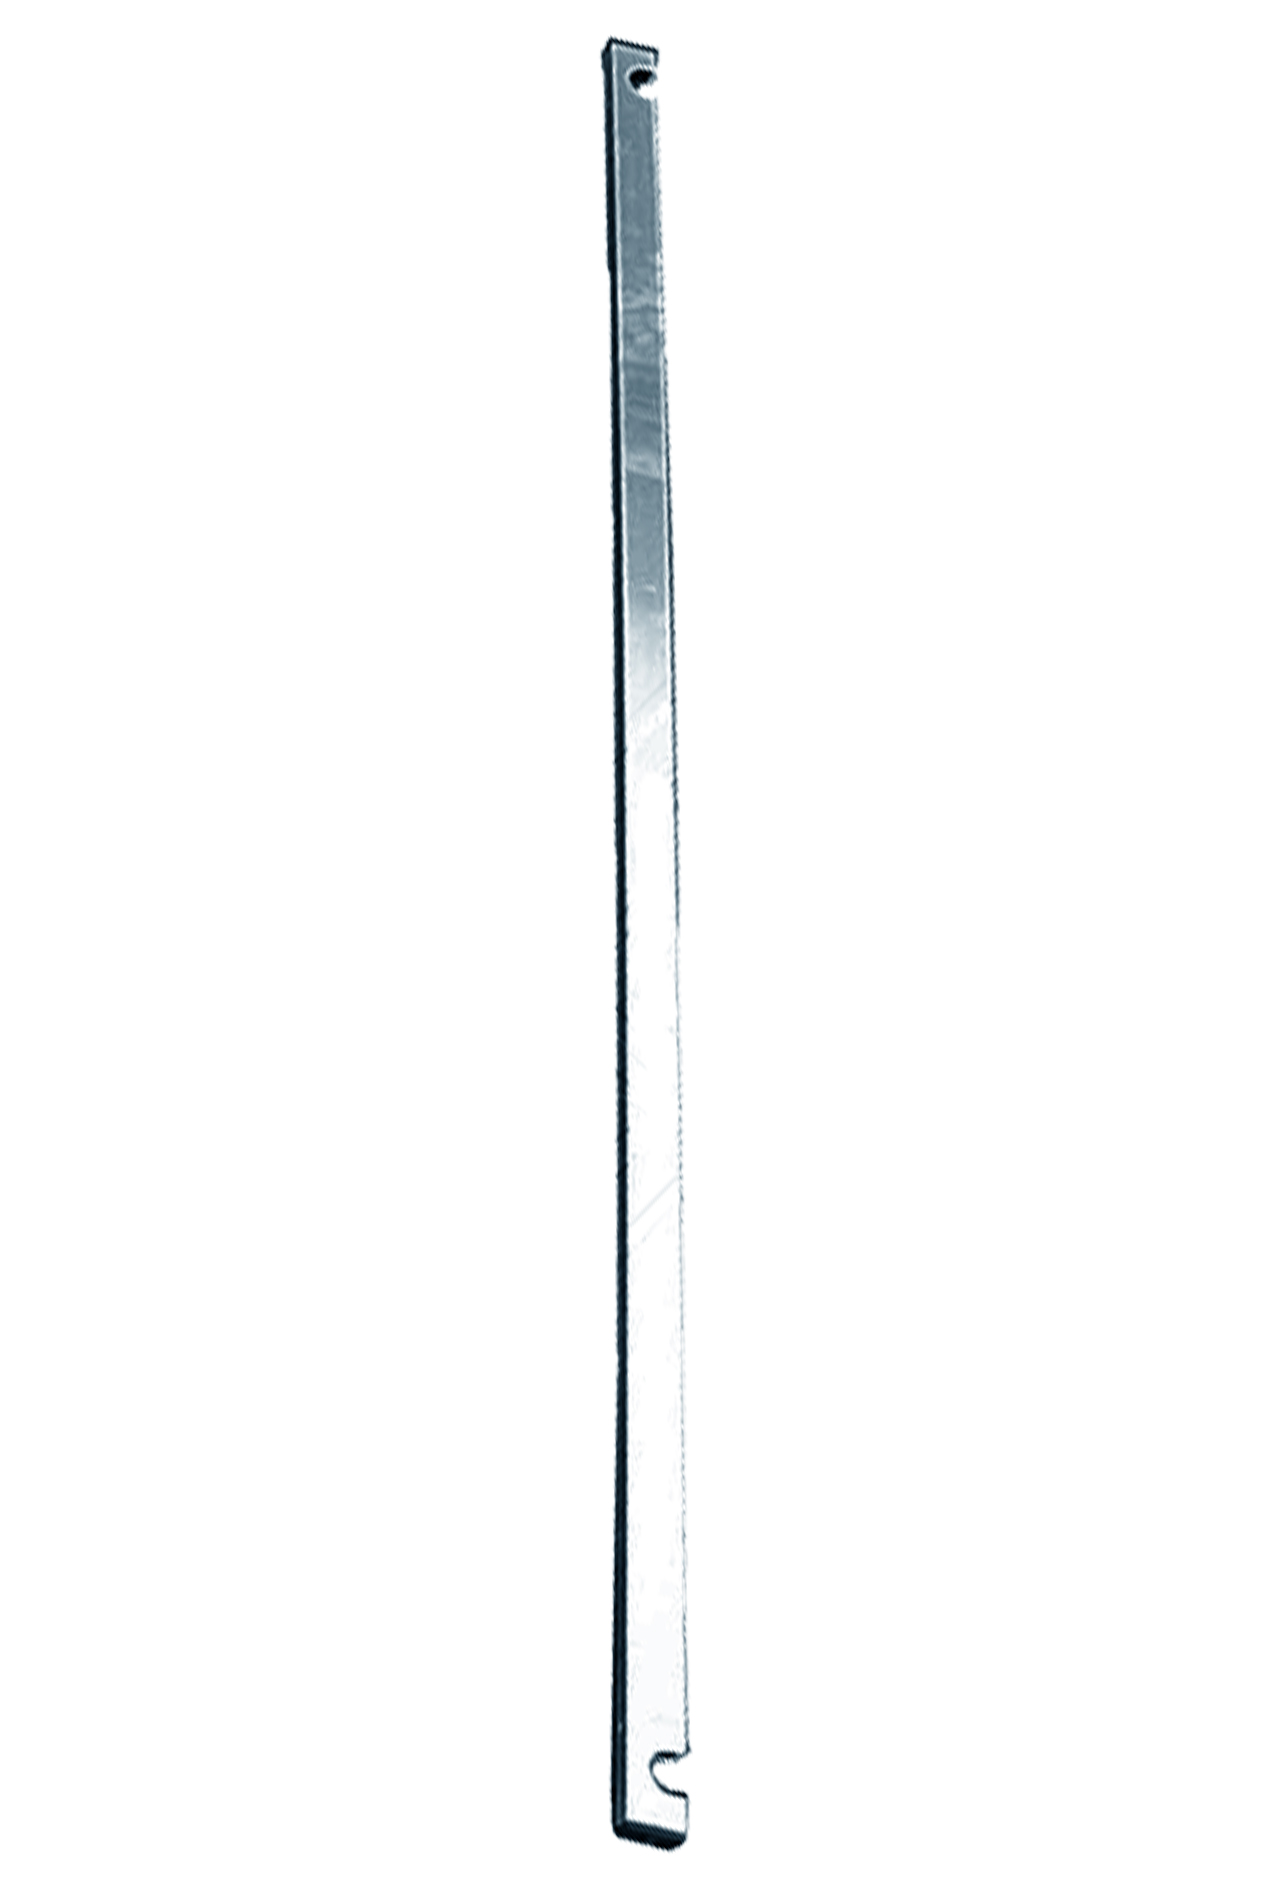 Дополнительное изображение Stabilo серии 1000 рабочая высота 10,2 м, размер площадки (2x0.75 м)